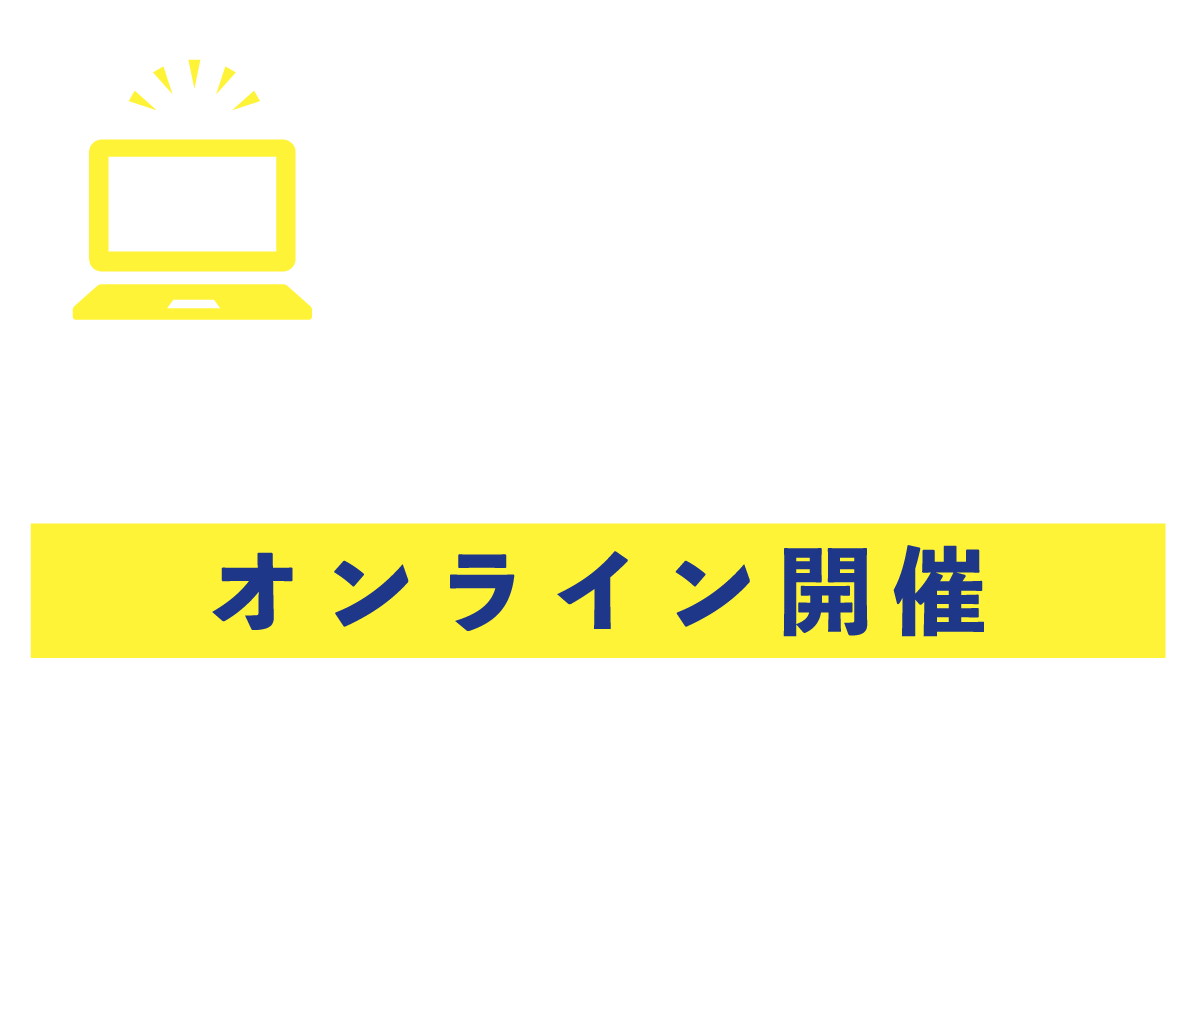 2023年3月3日（金）17:00-18:30 Zoomにてオンライン開催